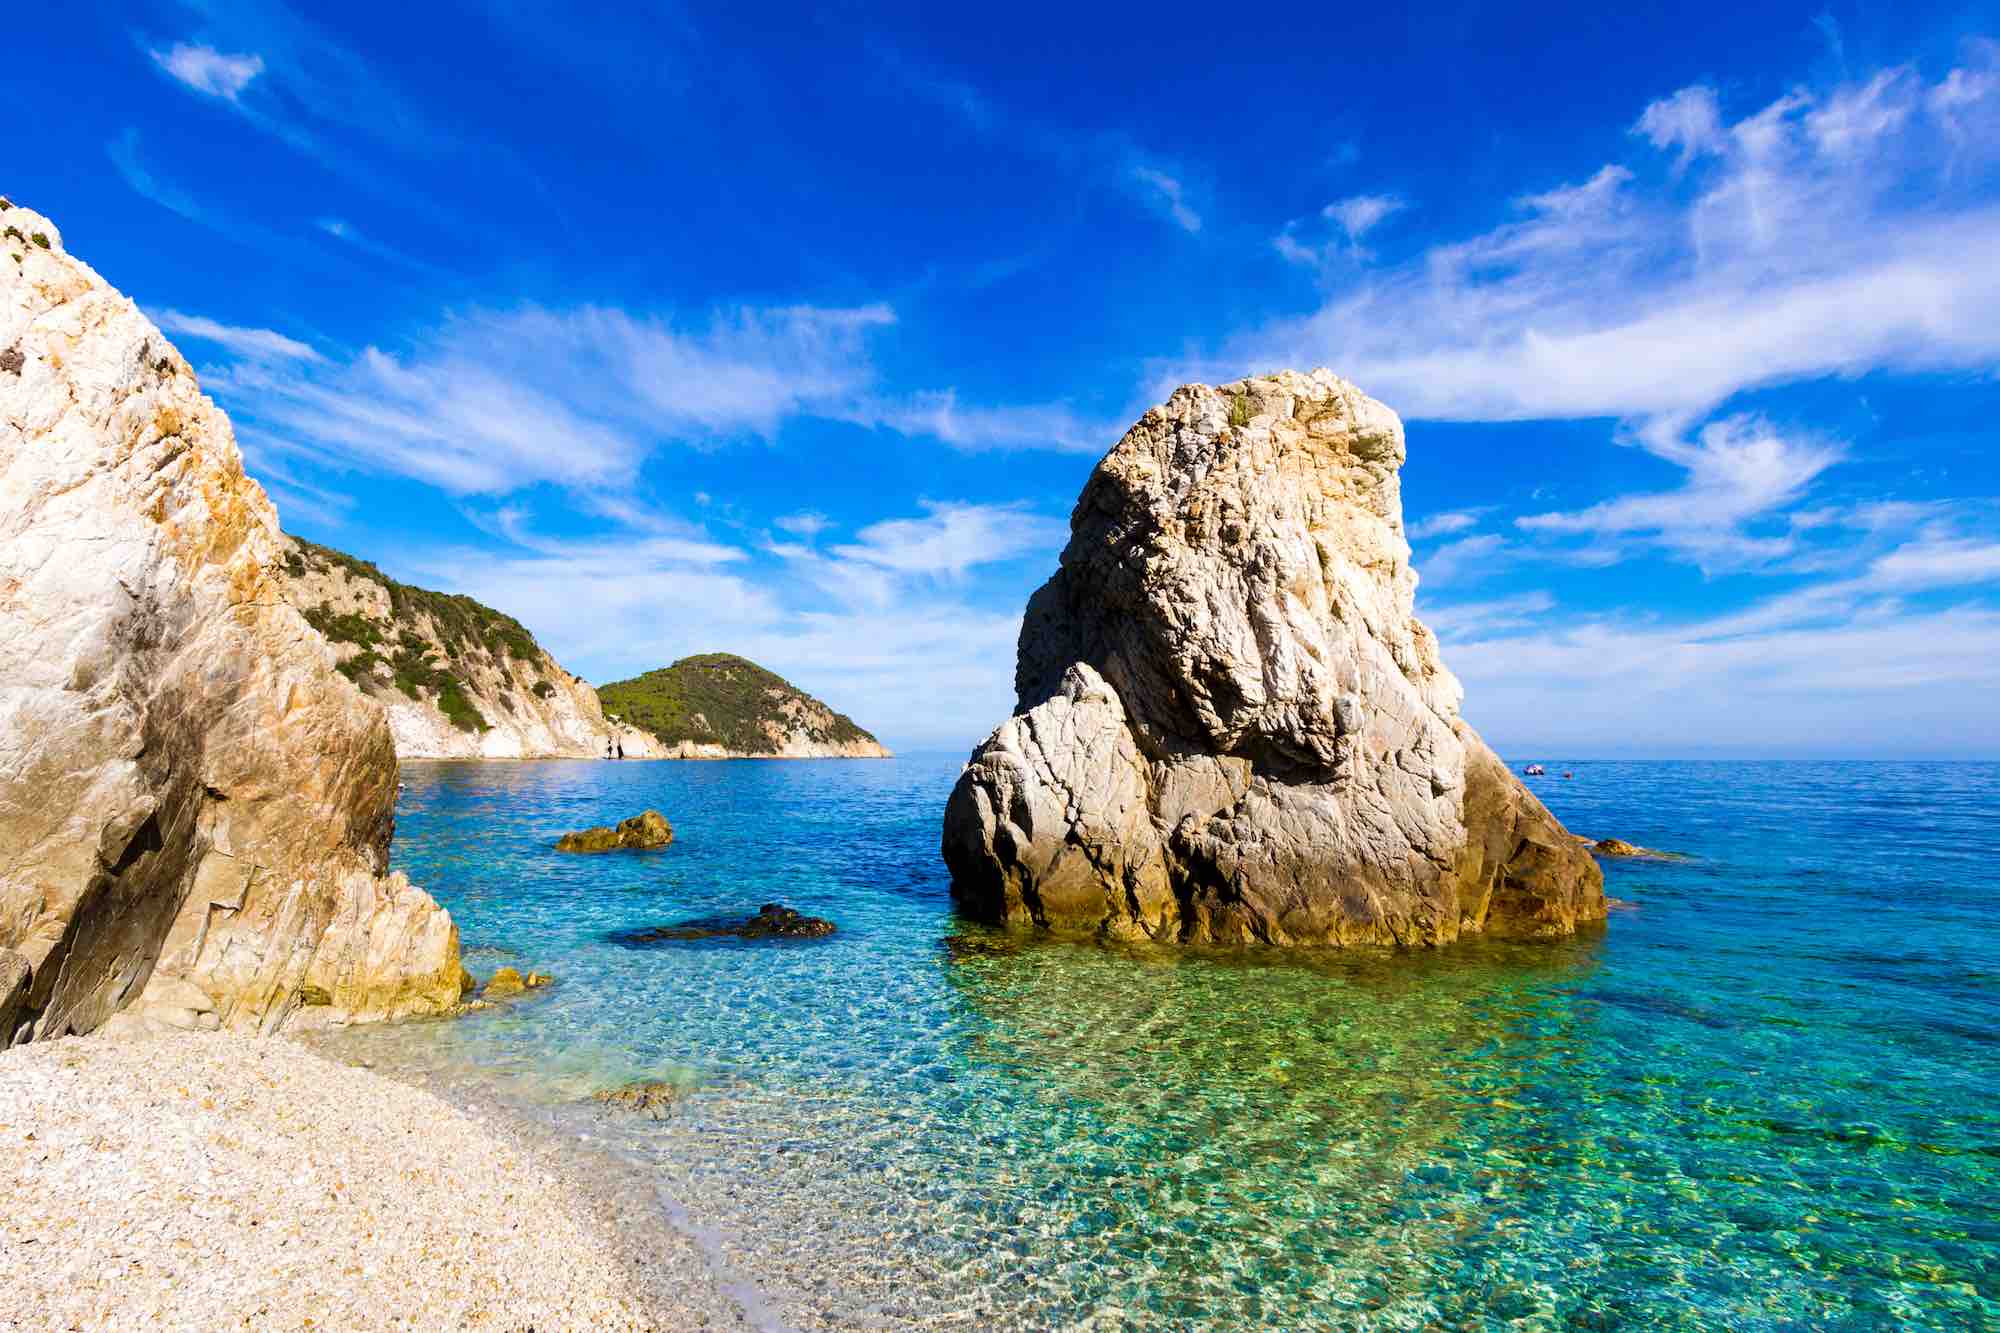 Spiaggia Sansone all'Isola d'Elba, una delle più belle spiagge della Toscana